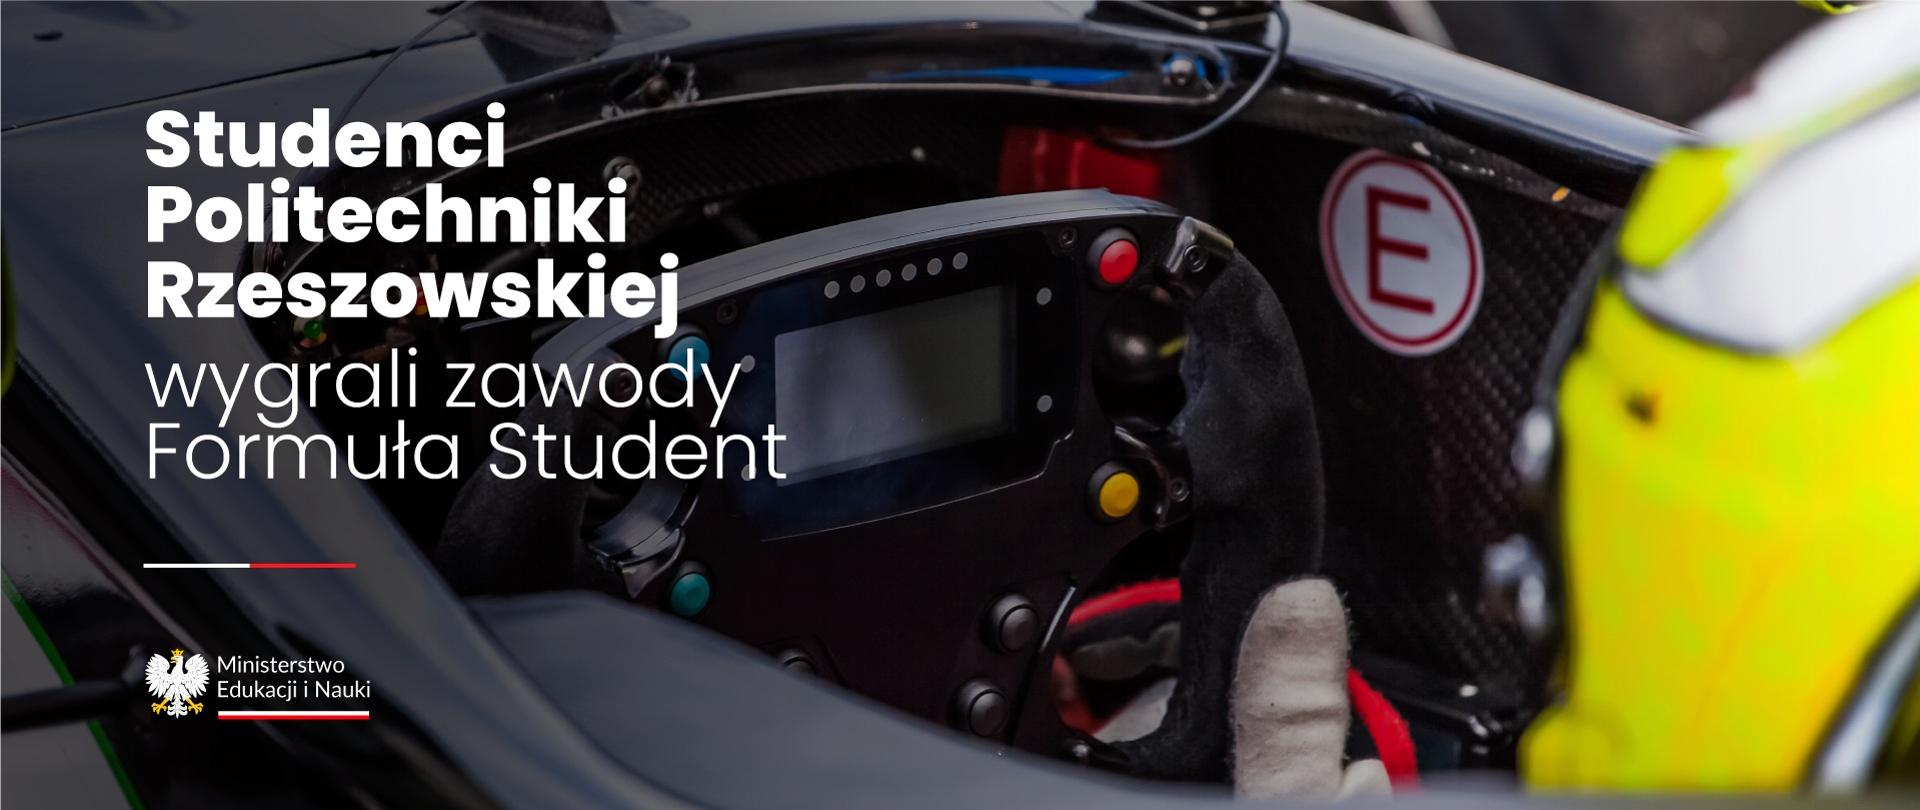 Widok wnętrza kokpitu wyścigowego samochodu, obok napis Studenci Politechniki Rzeszowskiej wygrali zawody Formuła Student.